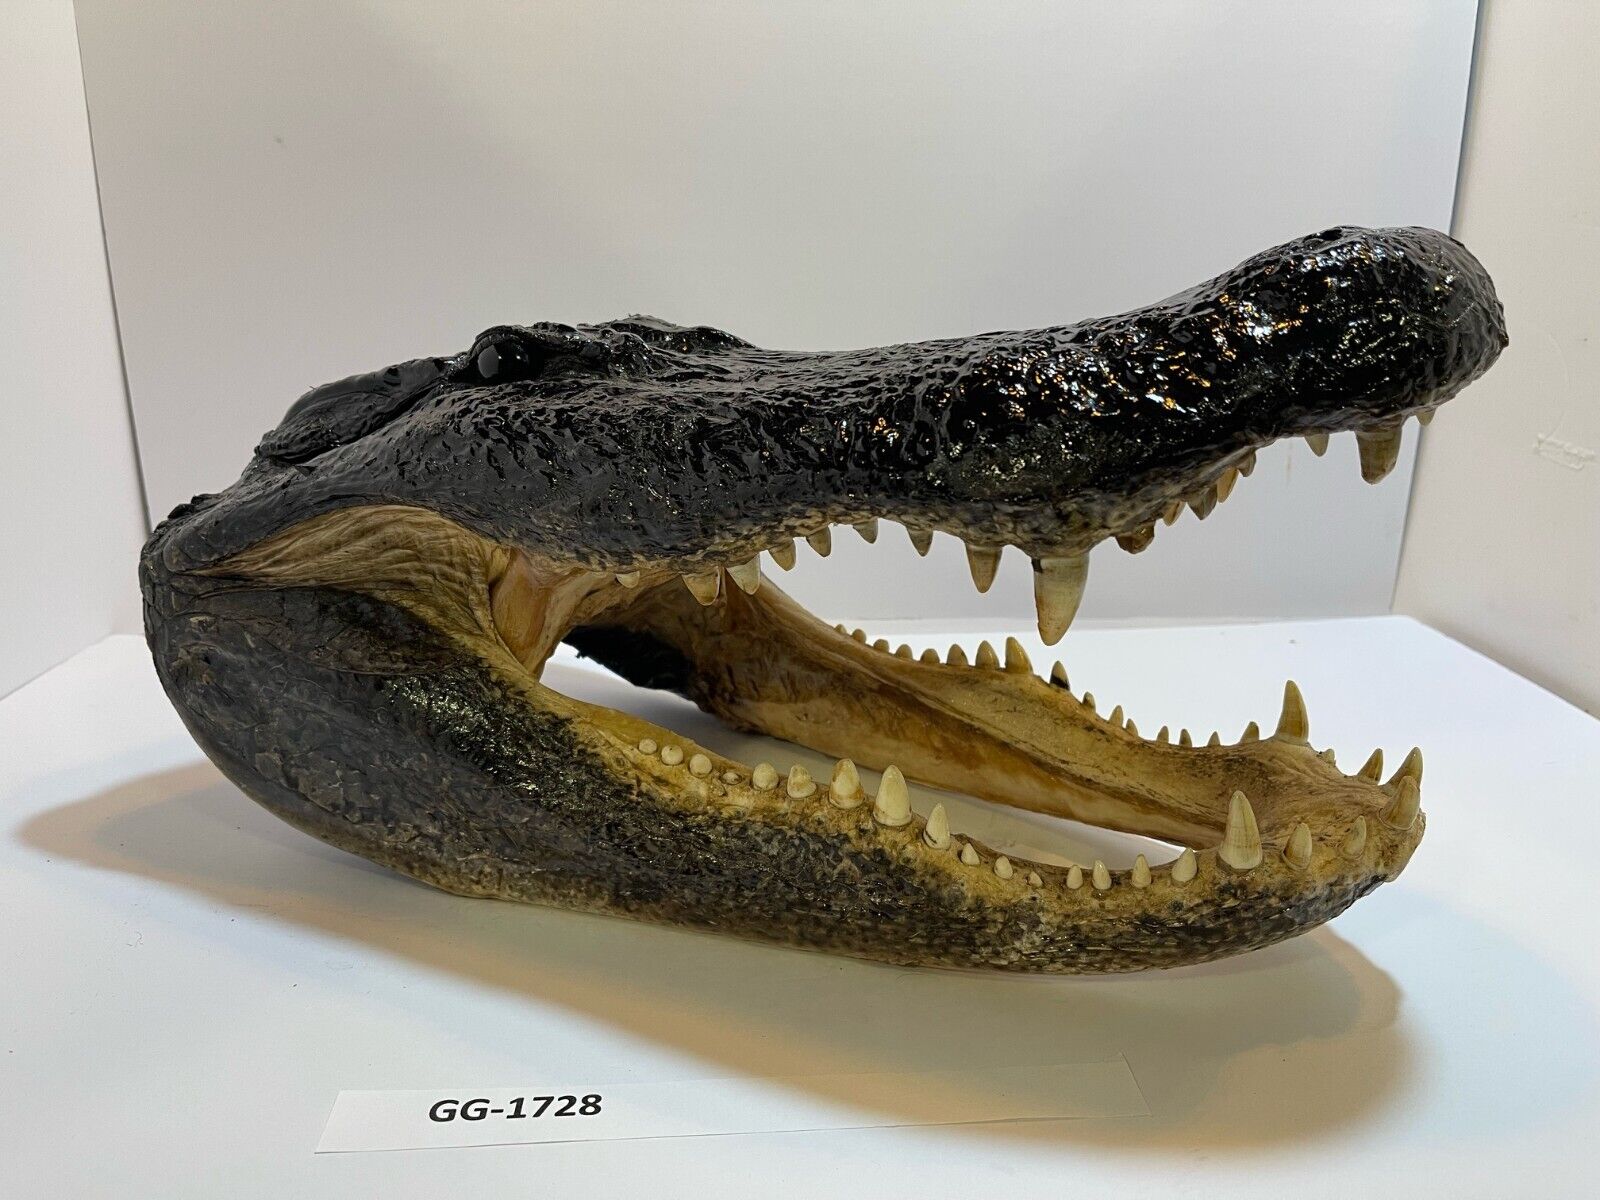 Alligator Head From 10’ Wild Louisiana Gator